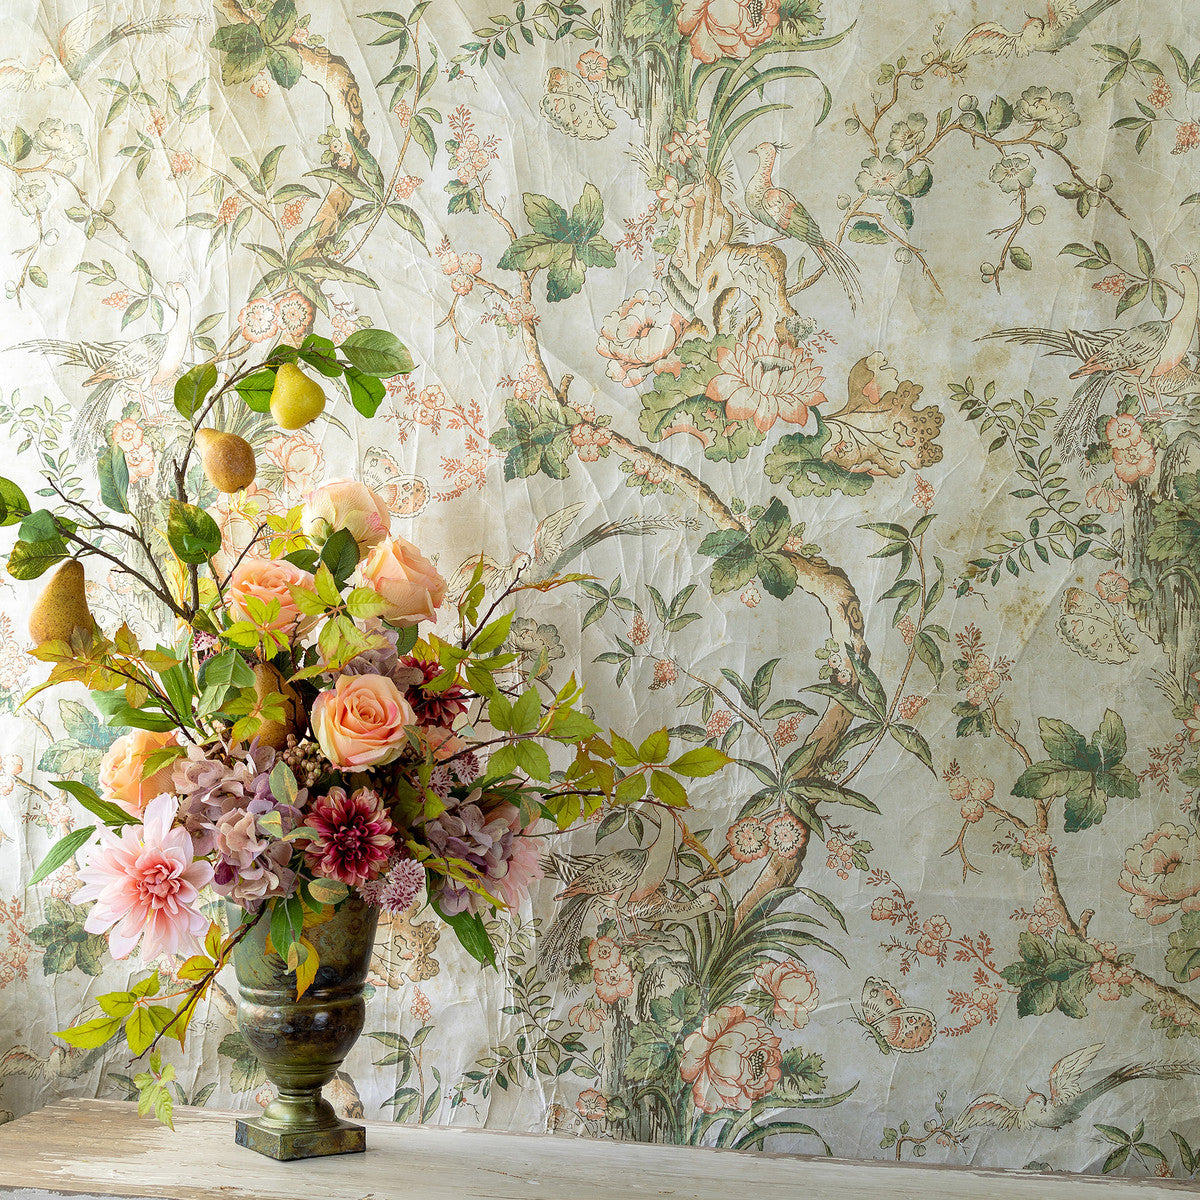 antique blossom flower wallpaper for walls, vintage floral wallpaper for walls